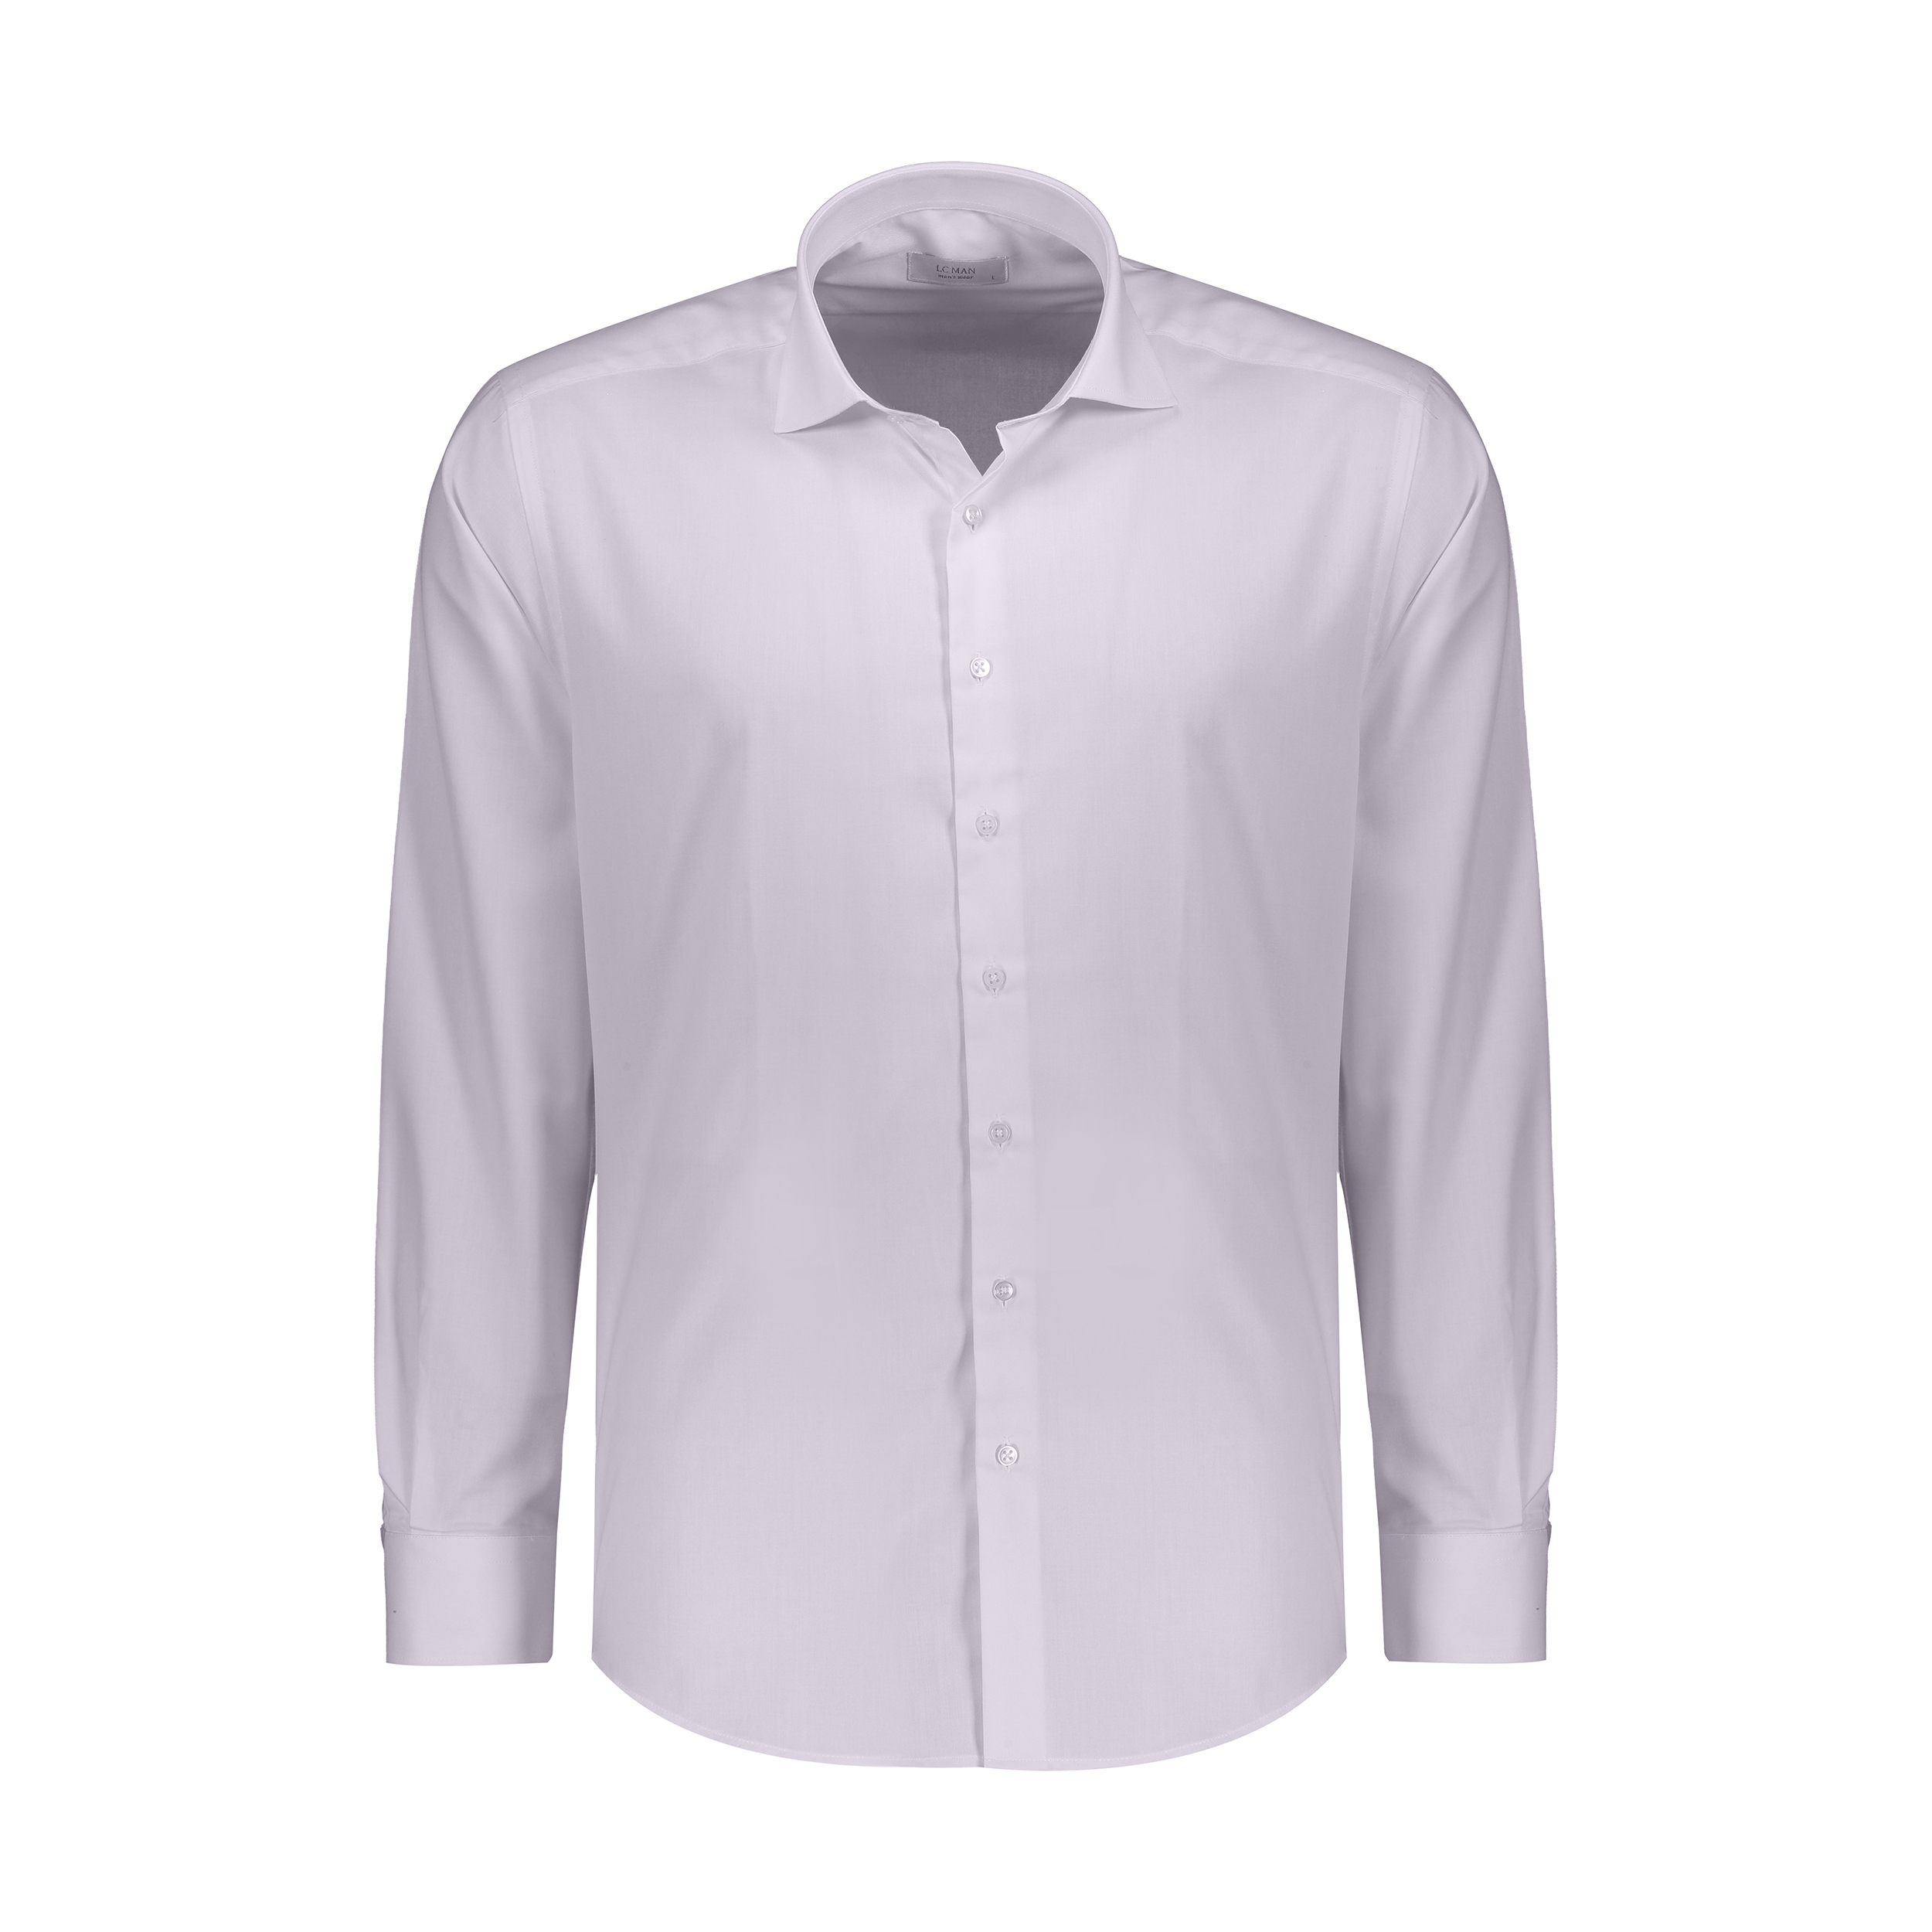 پیراهن مردانه ال سی من مدل 02111195-001 -  - 1